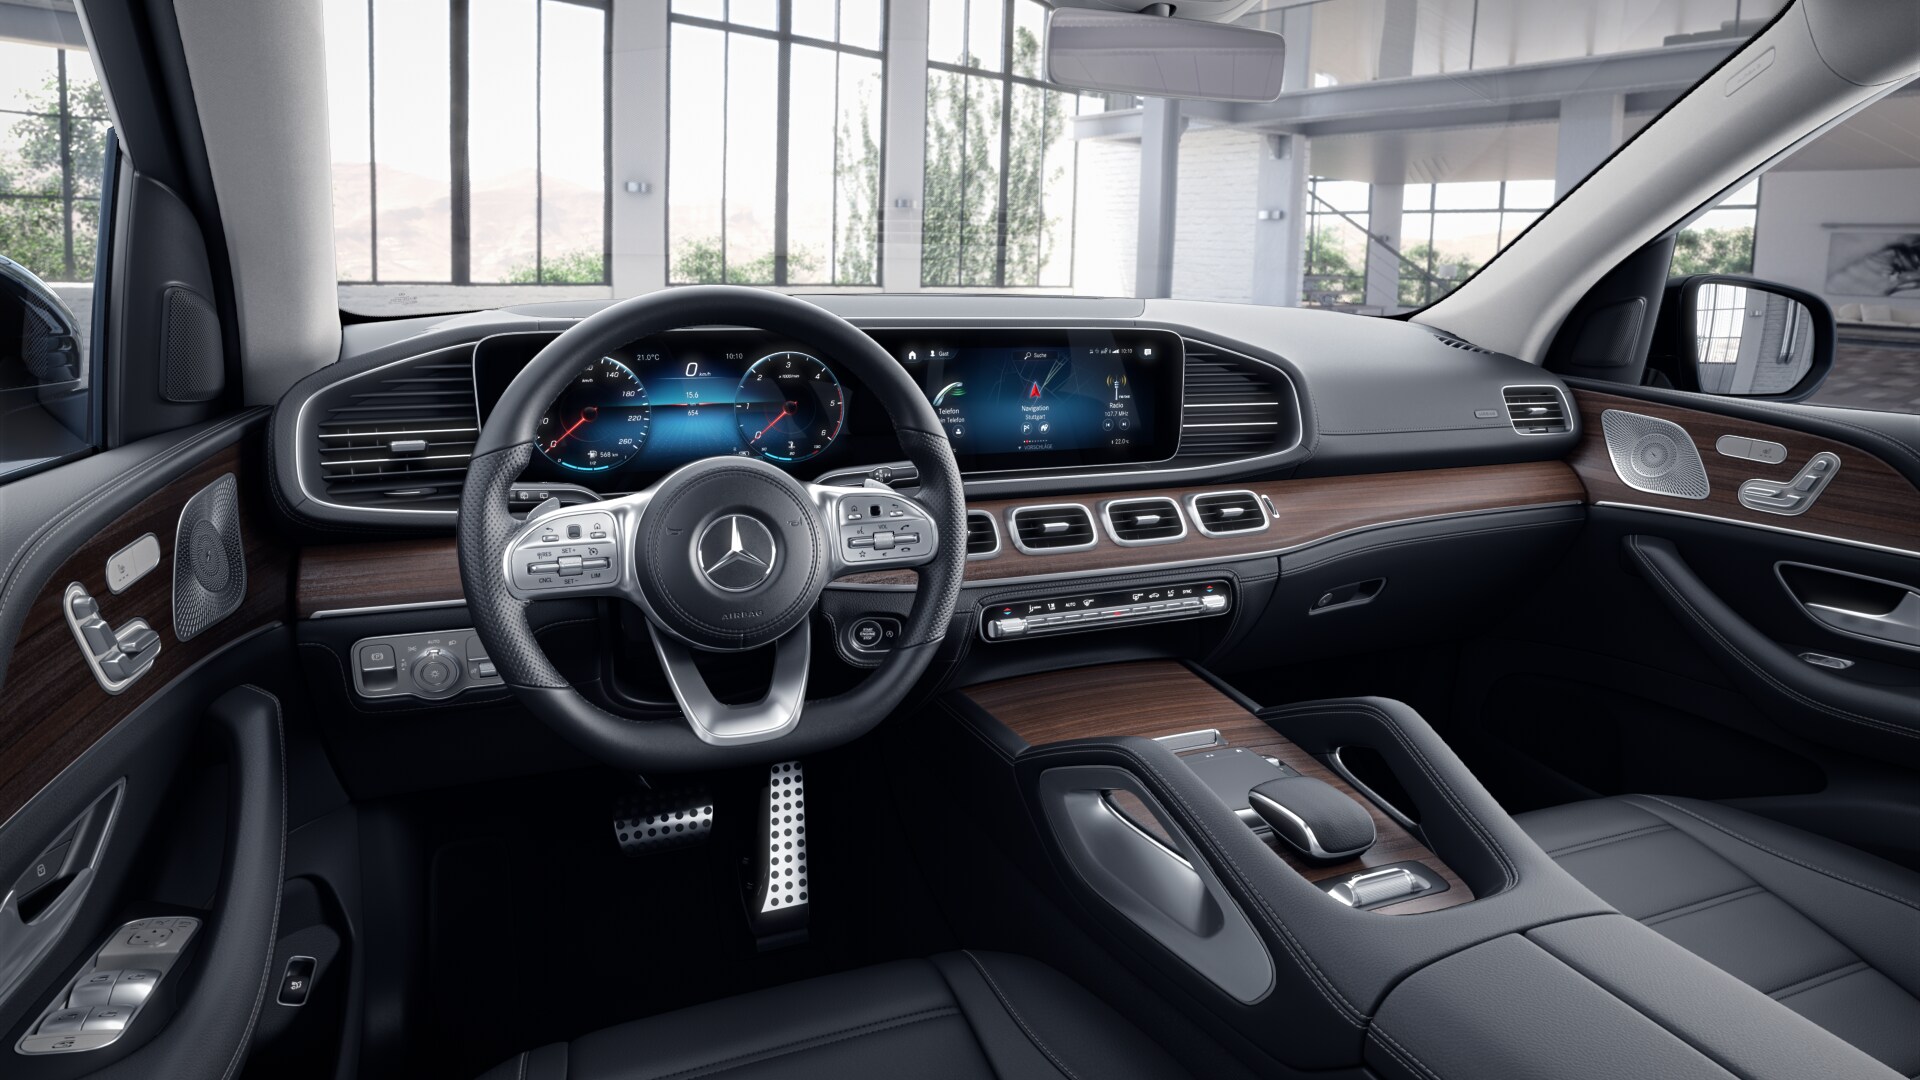 Hé lộ trang bị Mercedes-Benz GLS 2020 sắp ra mắt tại Việt Nam, giá dự kiến 4,9 tỷ đồng rẻ hơn gần một nửa Lexus LX 570 - Ảnh 4.